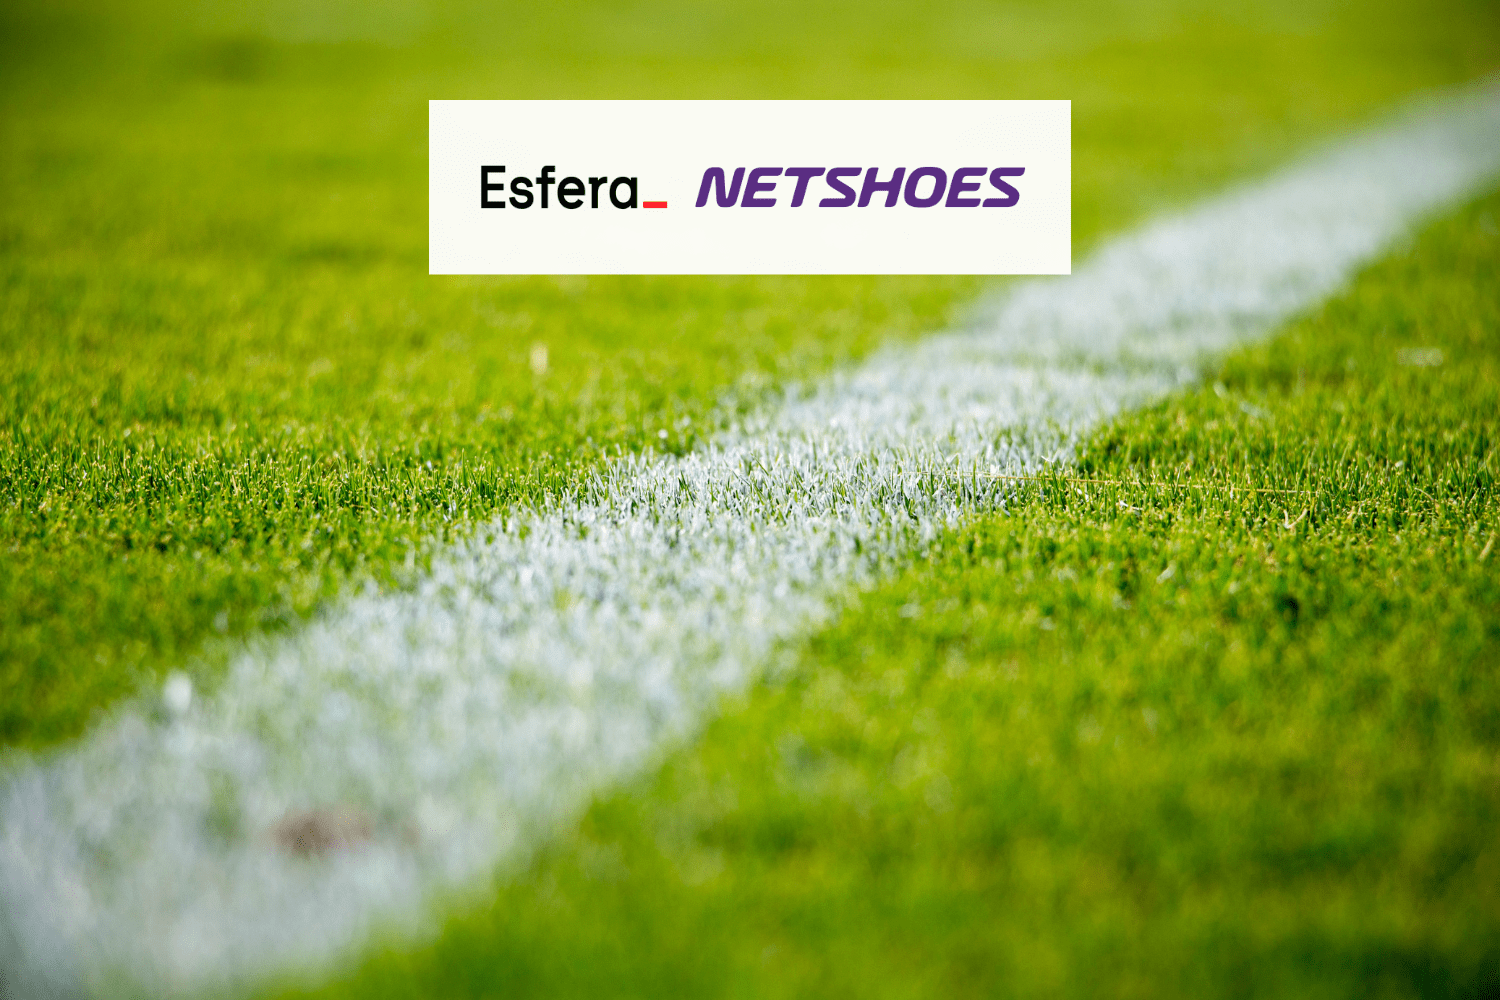 gramado de futebol com logo Esfera e Netshoes 6 pontos Esfera